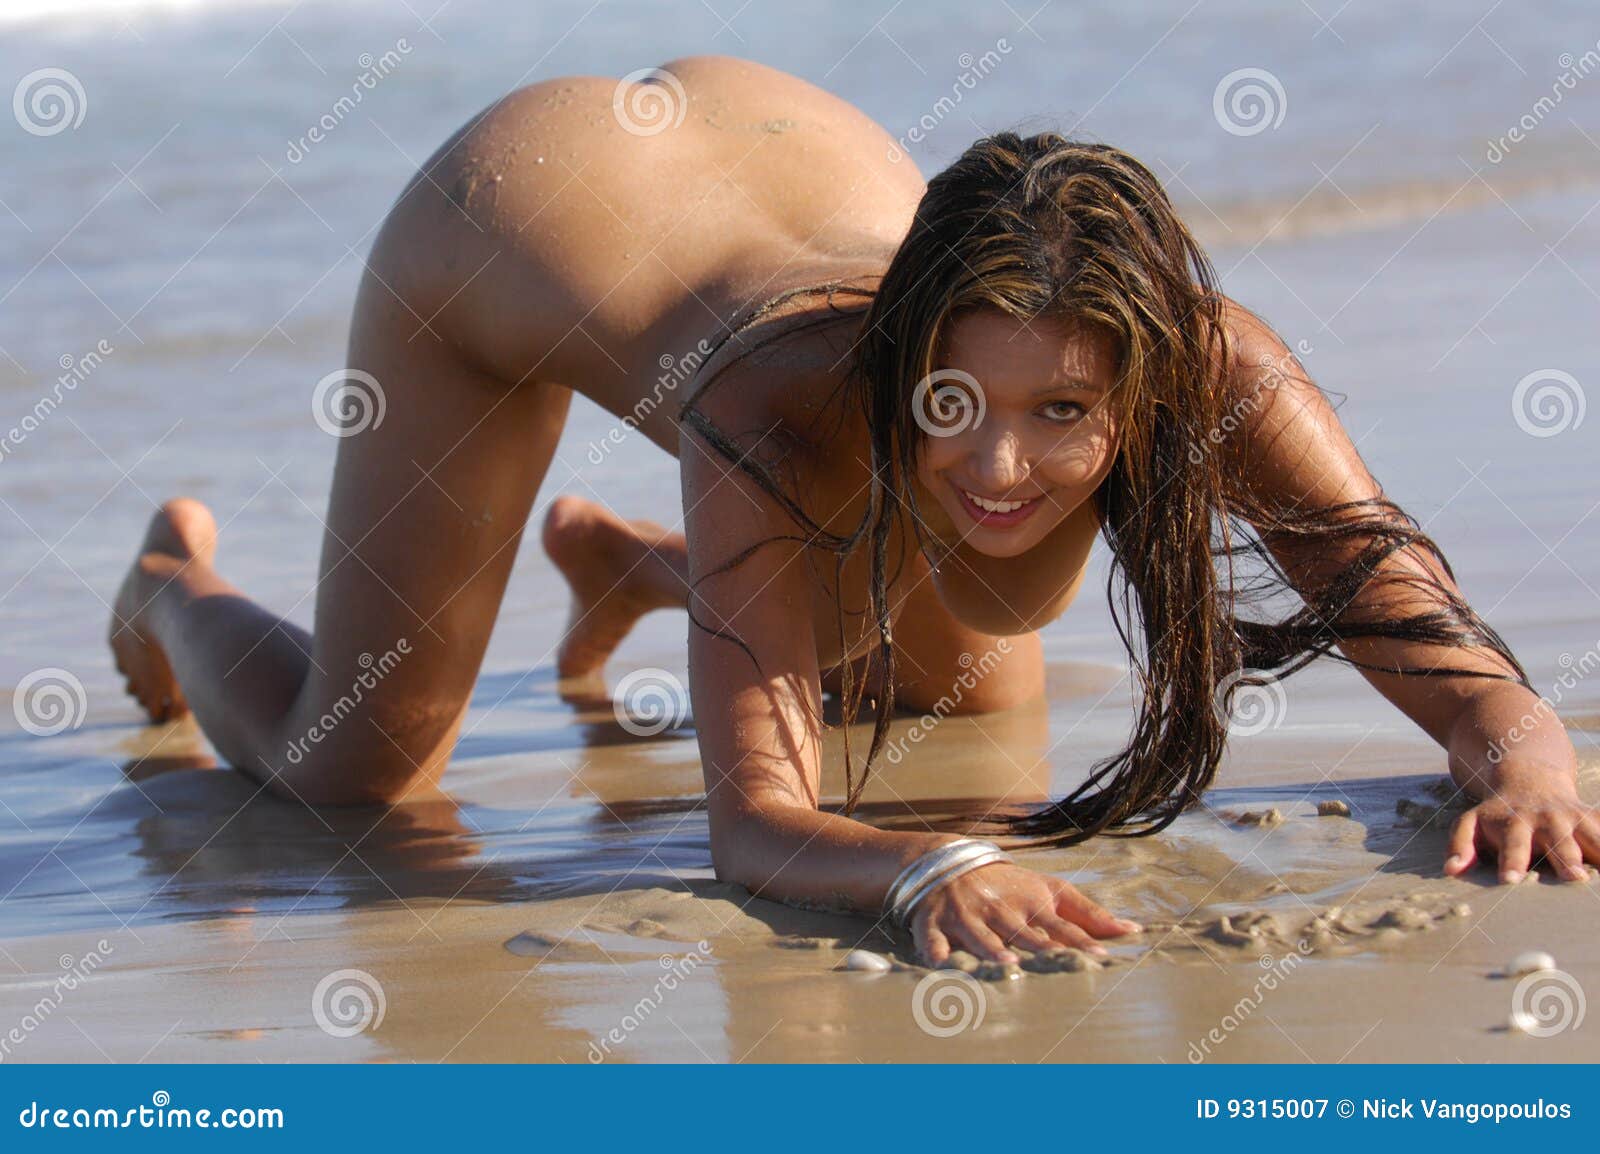 nude beach teen New York Daily News